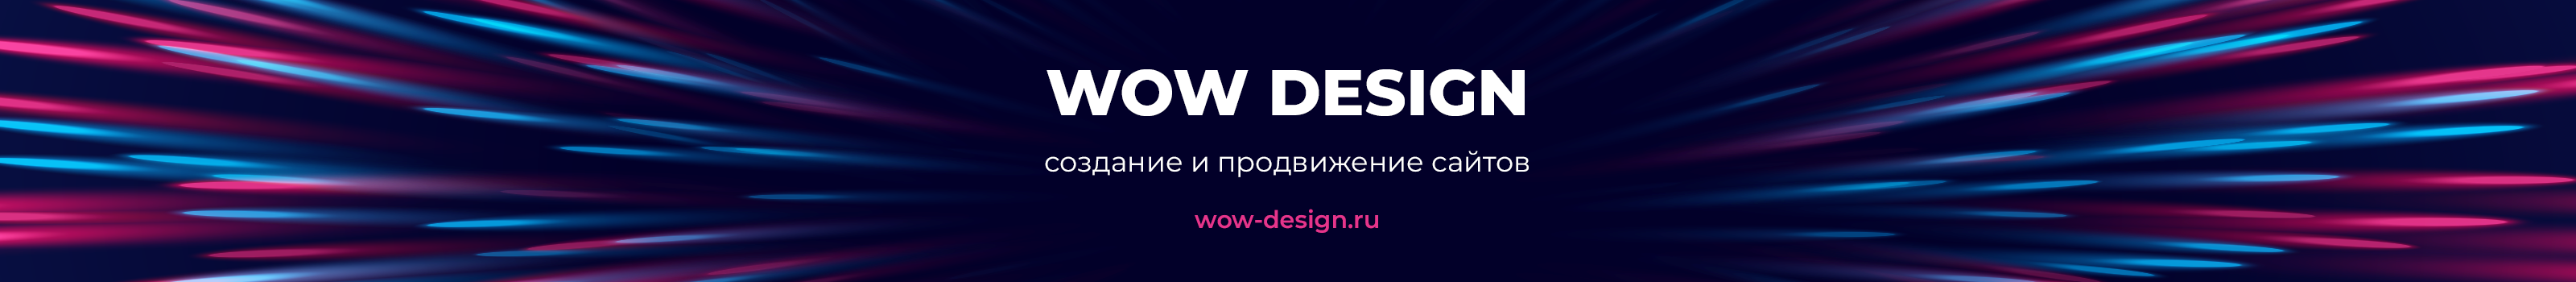 WOW DESIGN's profile banner